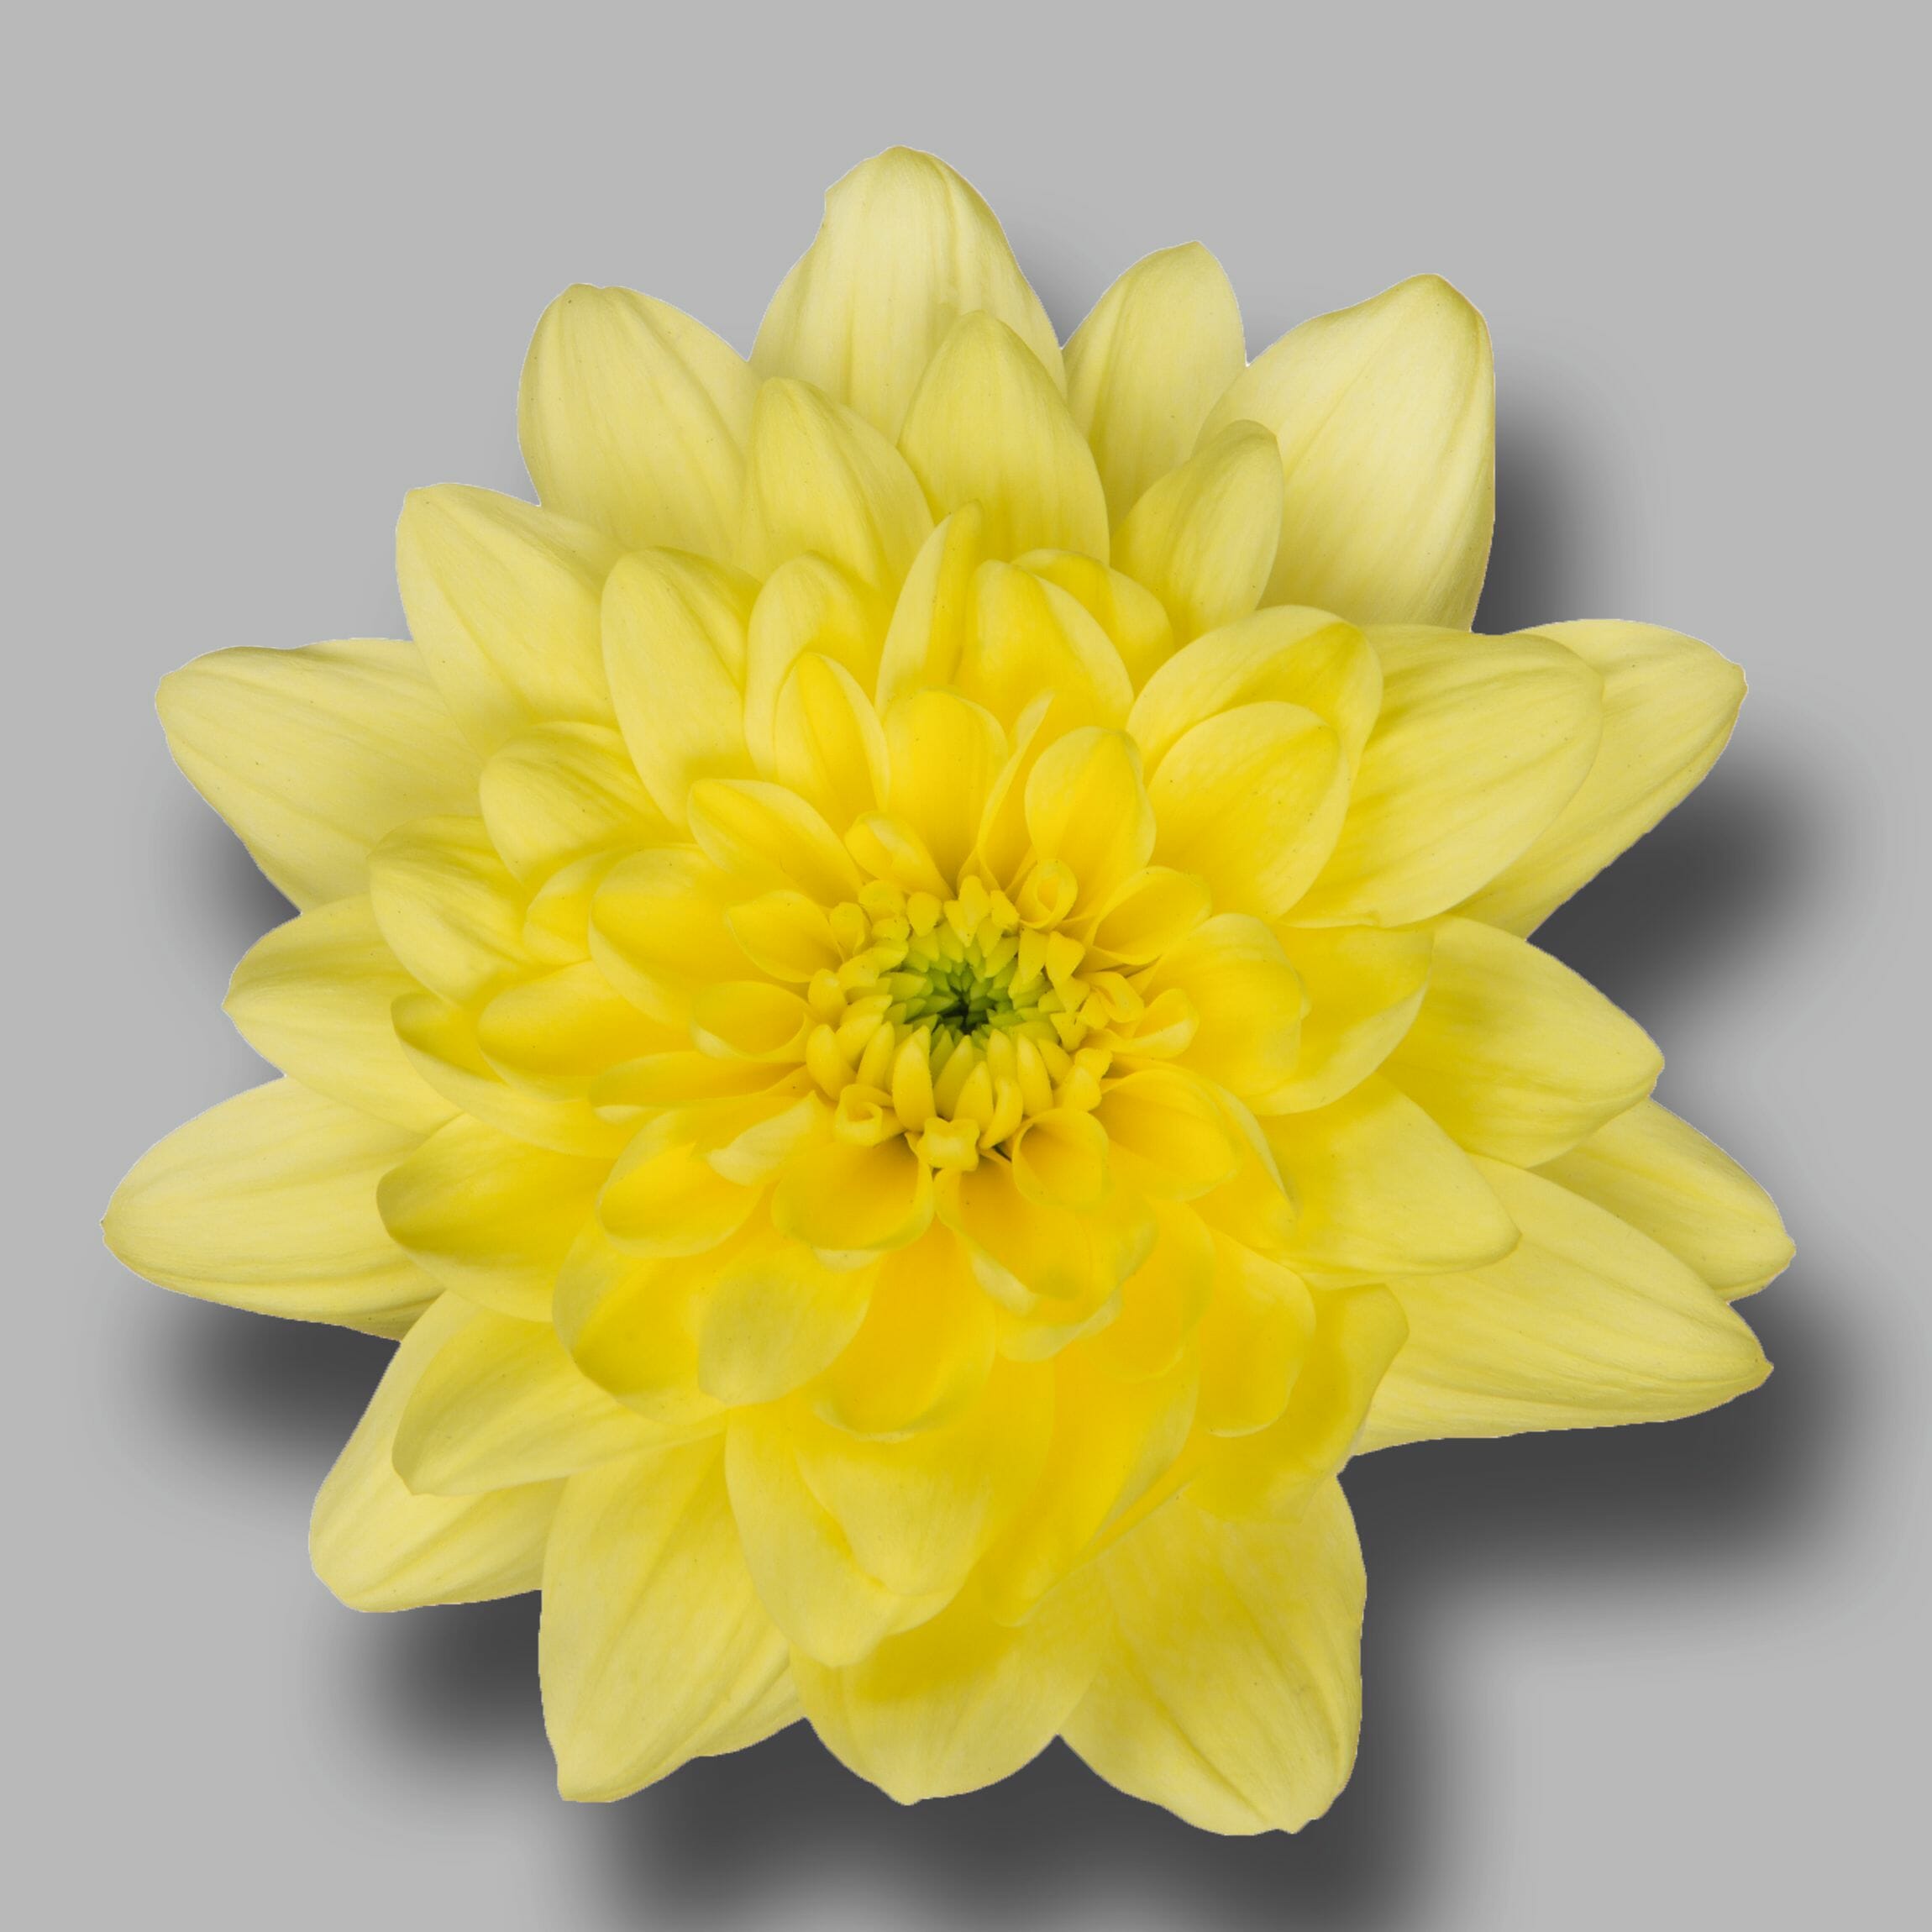 Chrysanthemum Pina Colada Yellow (10 Stems)